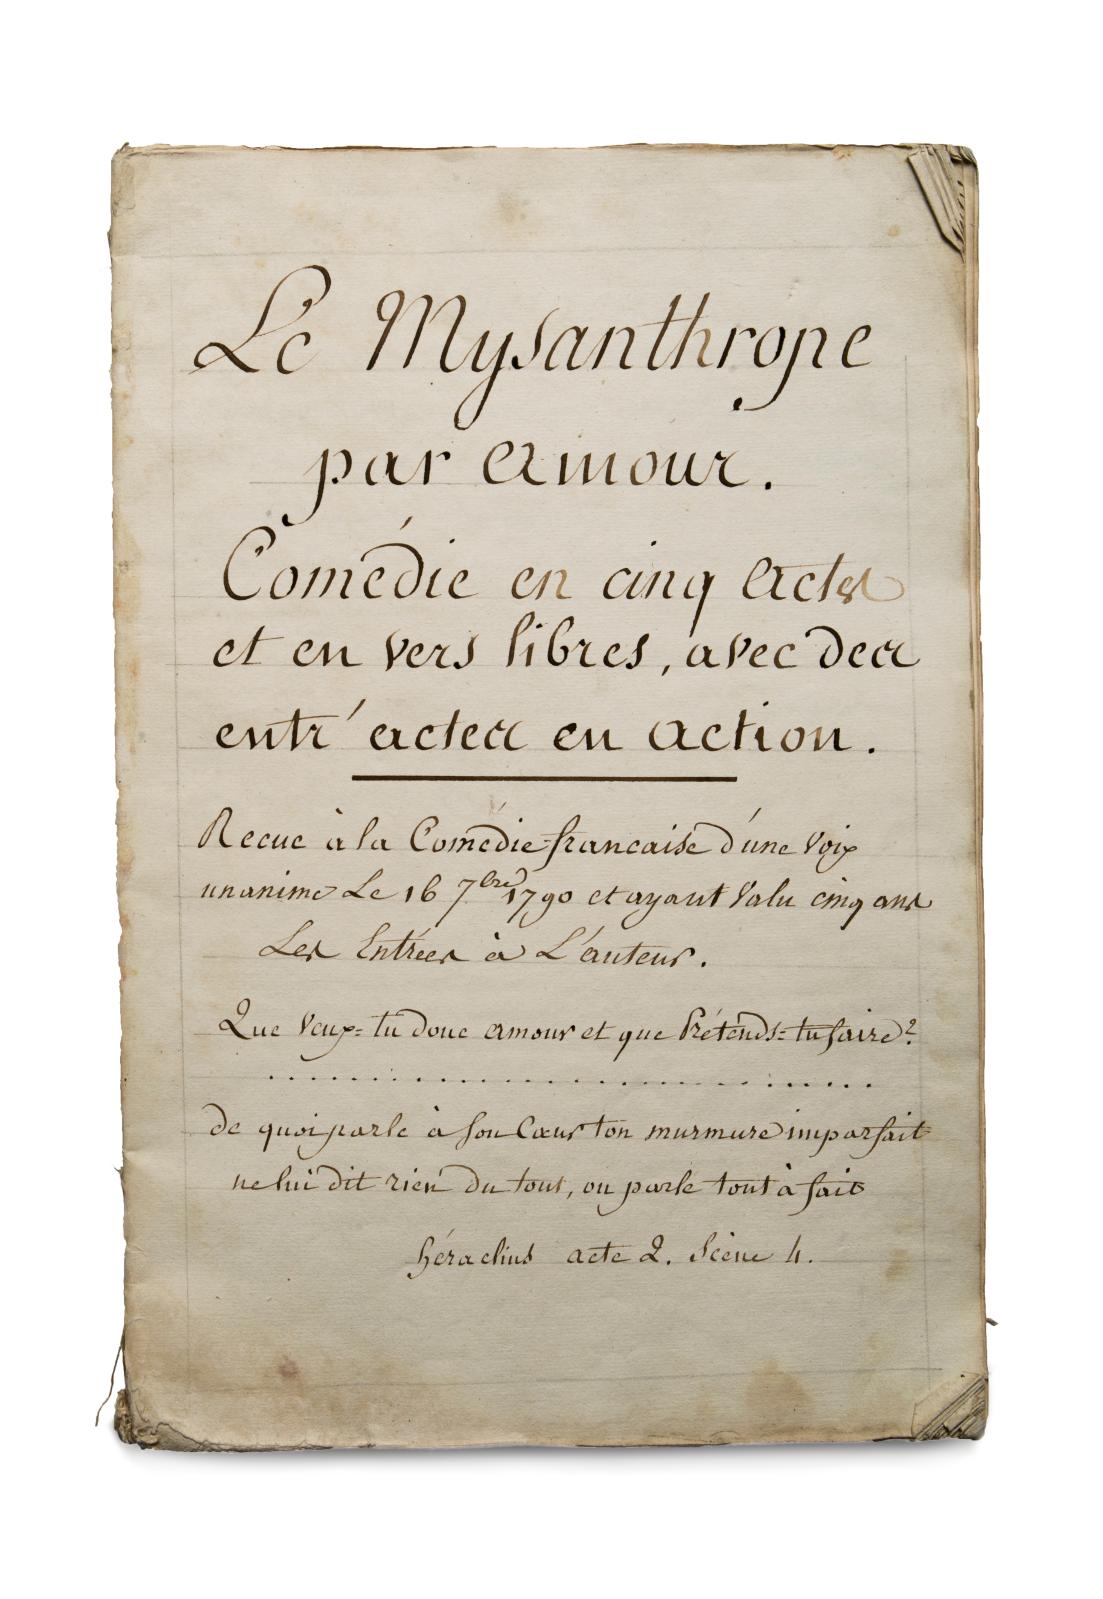 Le Mysanthrope par amour Comédie en cinq actes et en vers libres, avec des entr’actes en action, copie de la fin du XVIIIe siècle, 1 vol. in-4°, 74 pa